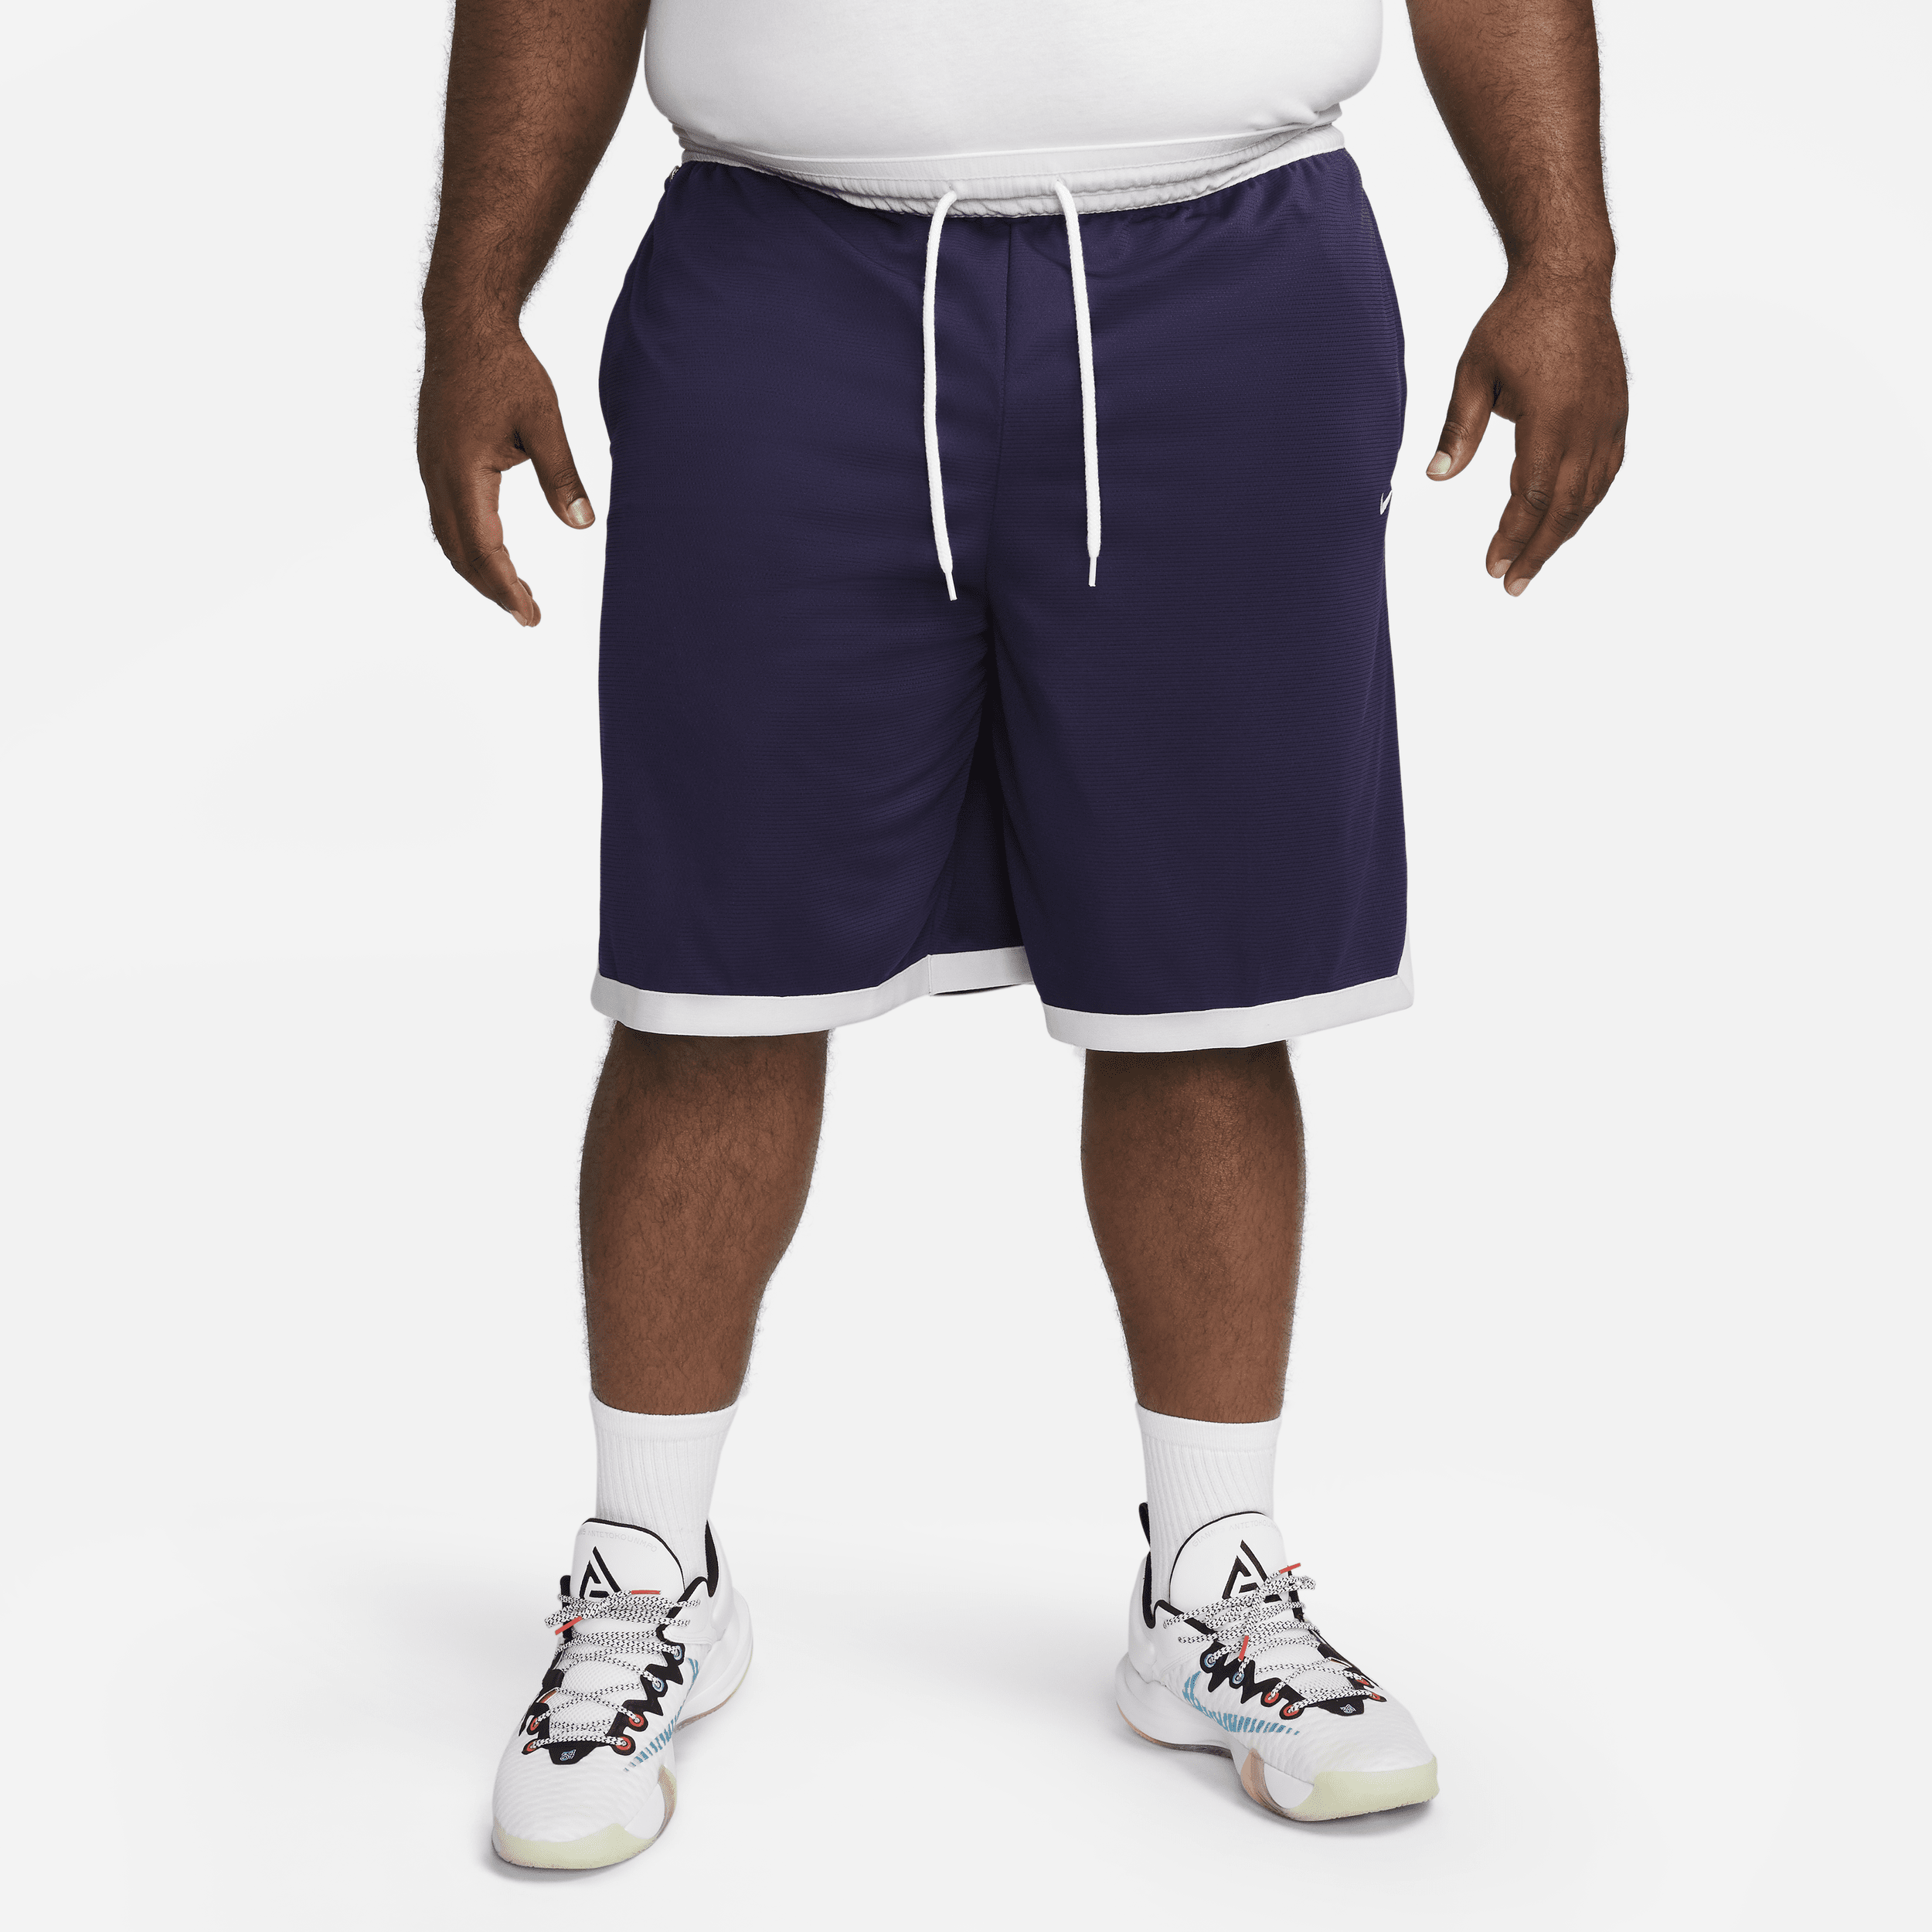 Nike Dri-FIT DNA-basketballshorts (25 cm) til mænd - lilla